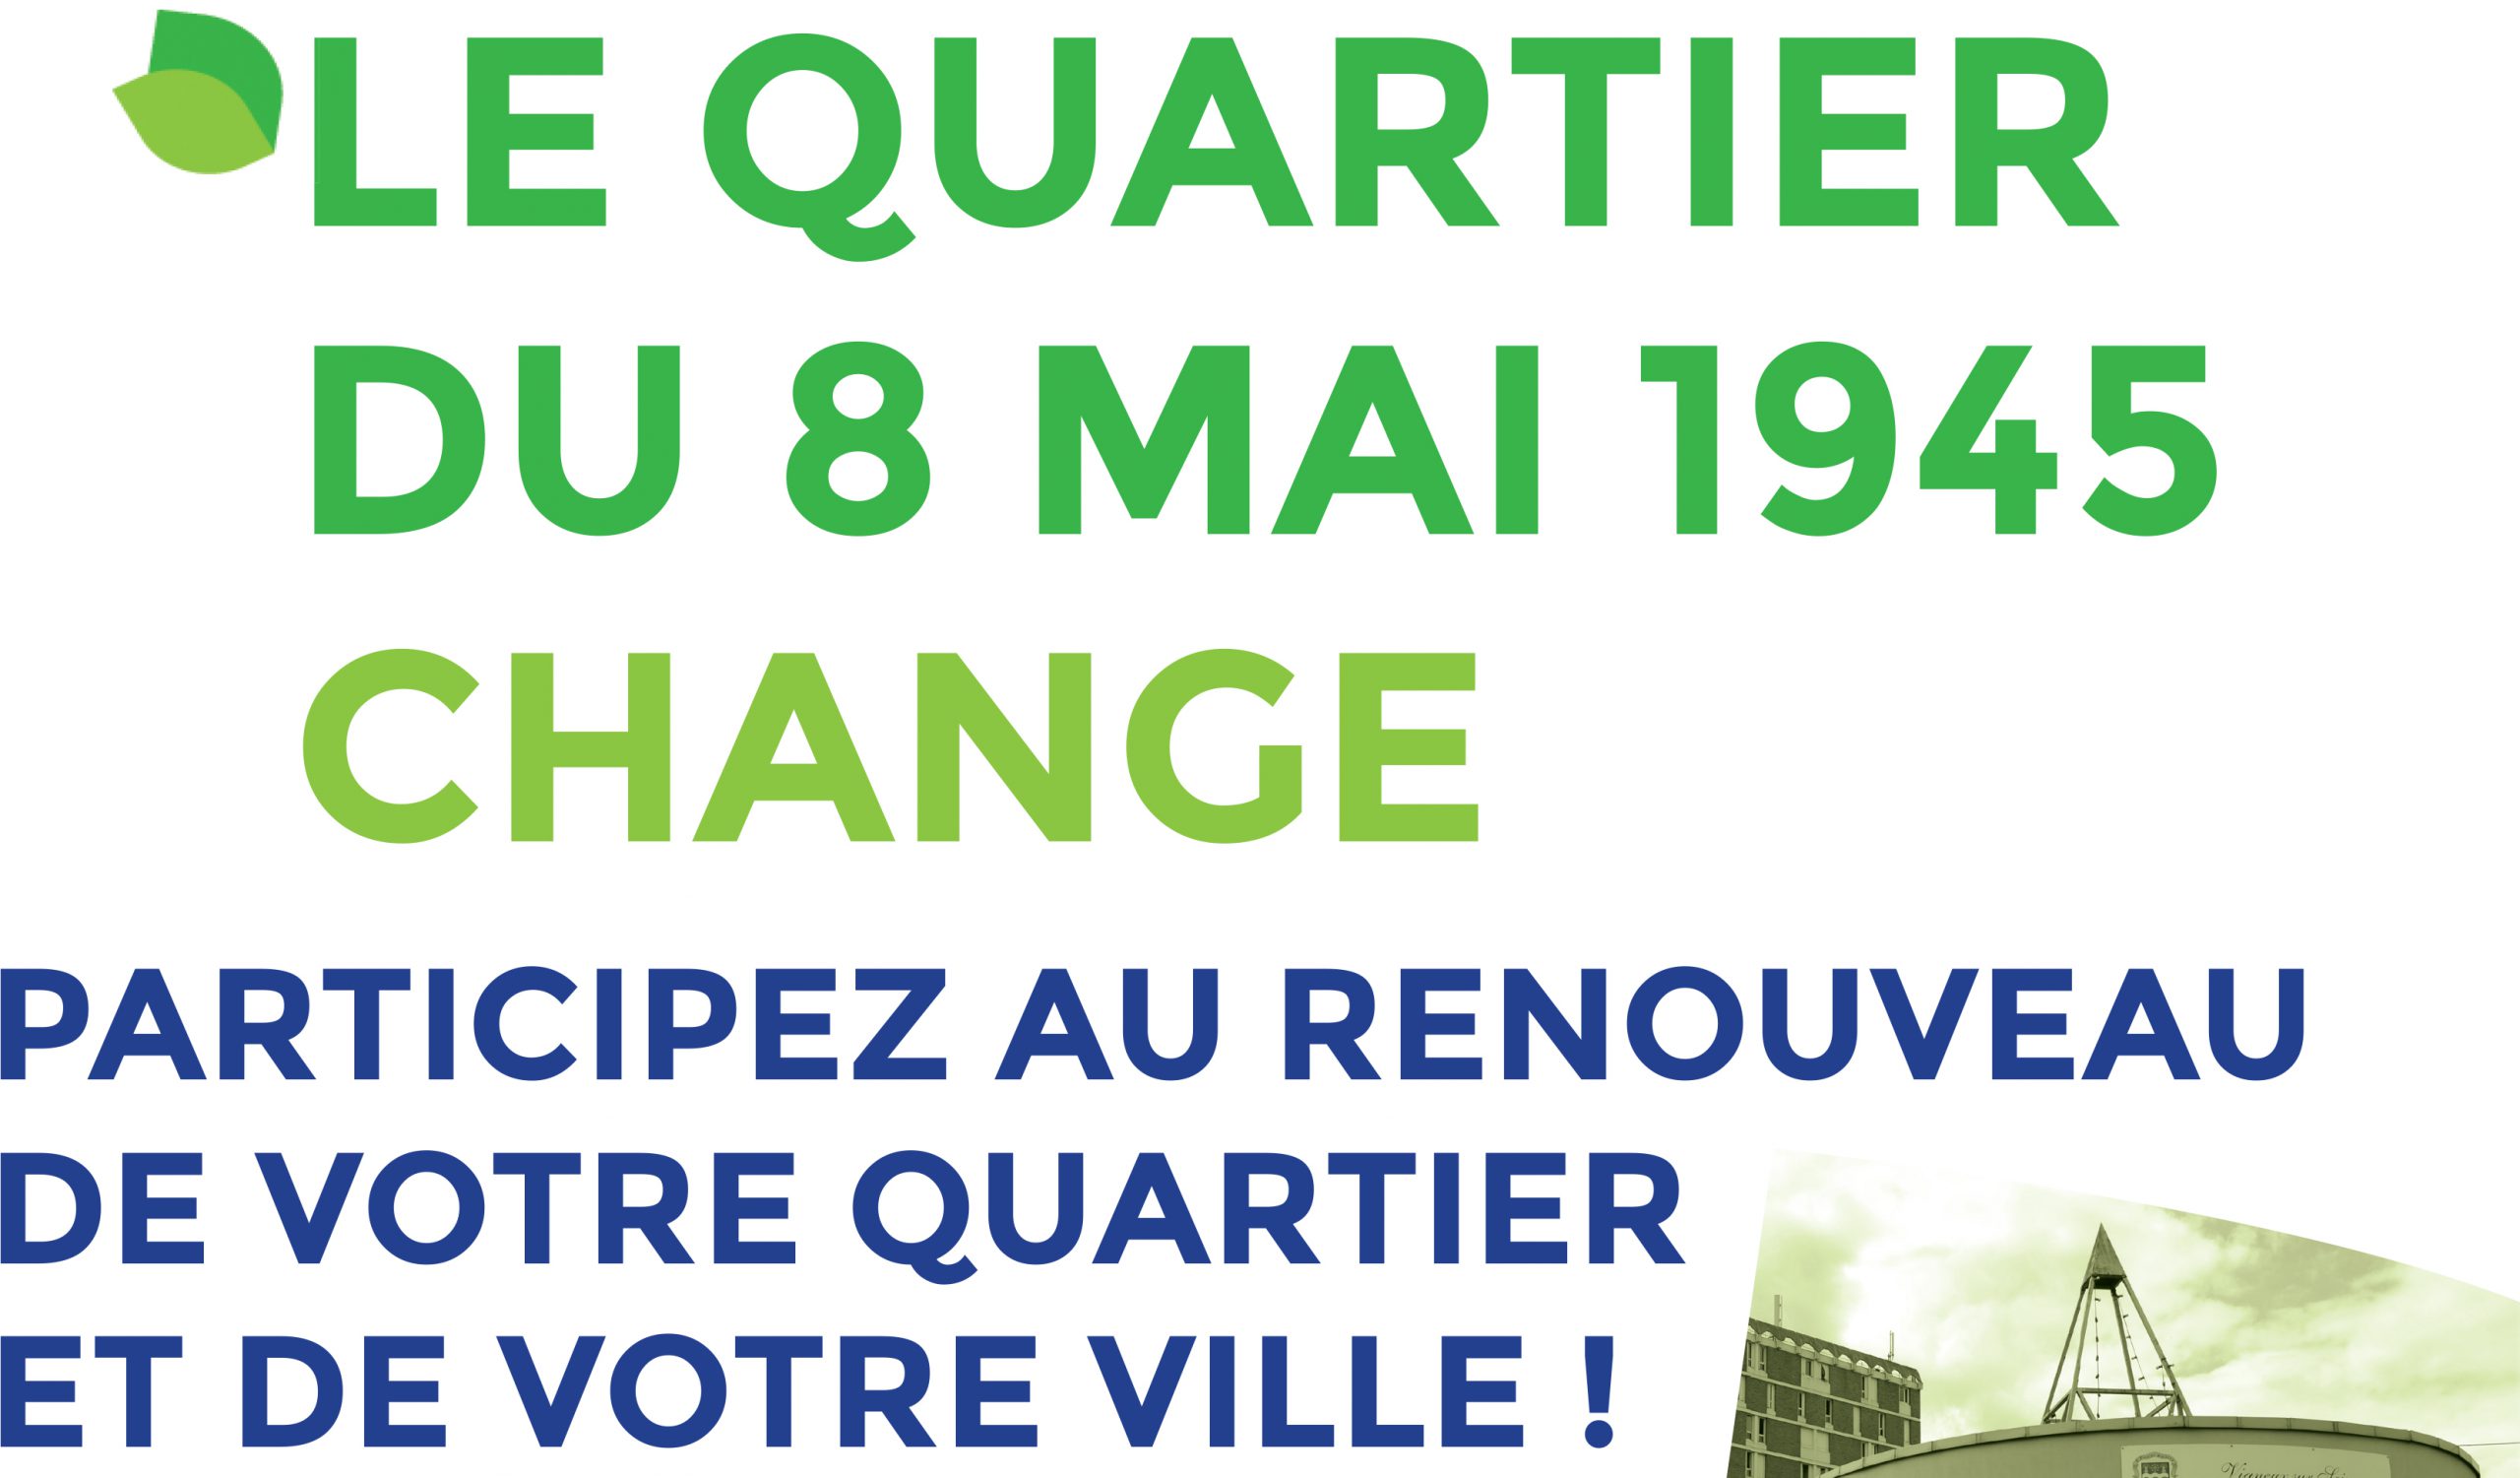 Participez au renouveau de la place du 8 mai 1945 à Vigneux-sur-Seine